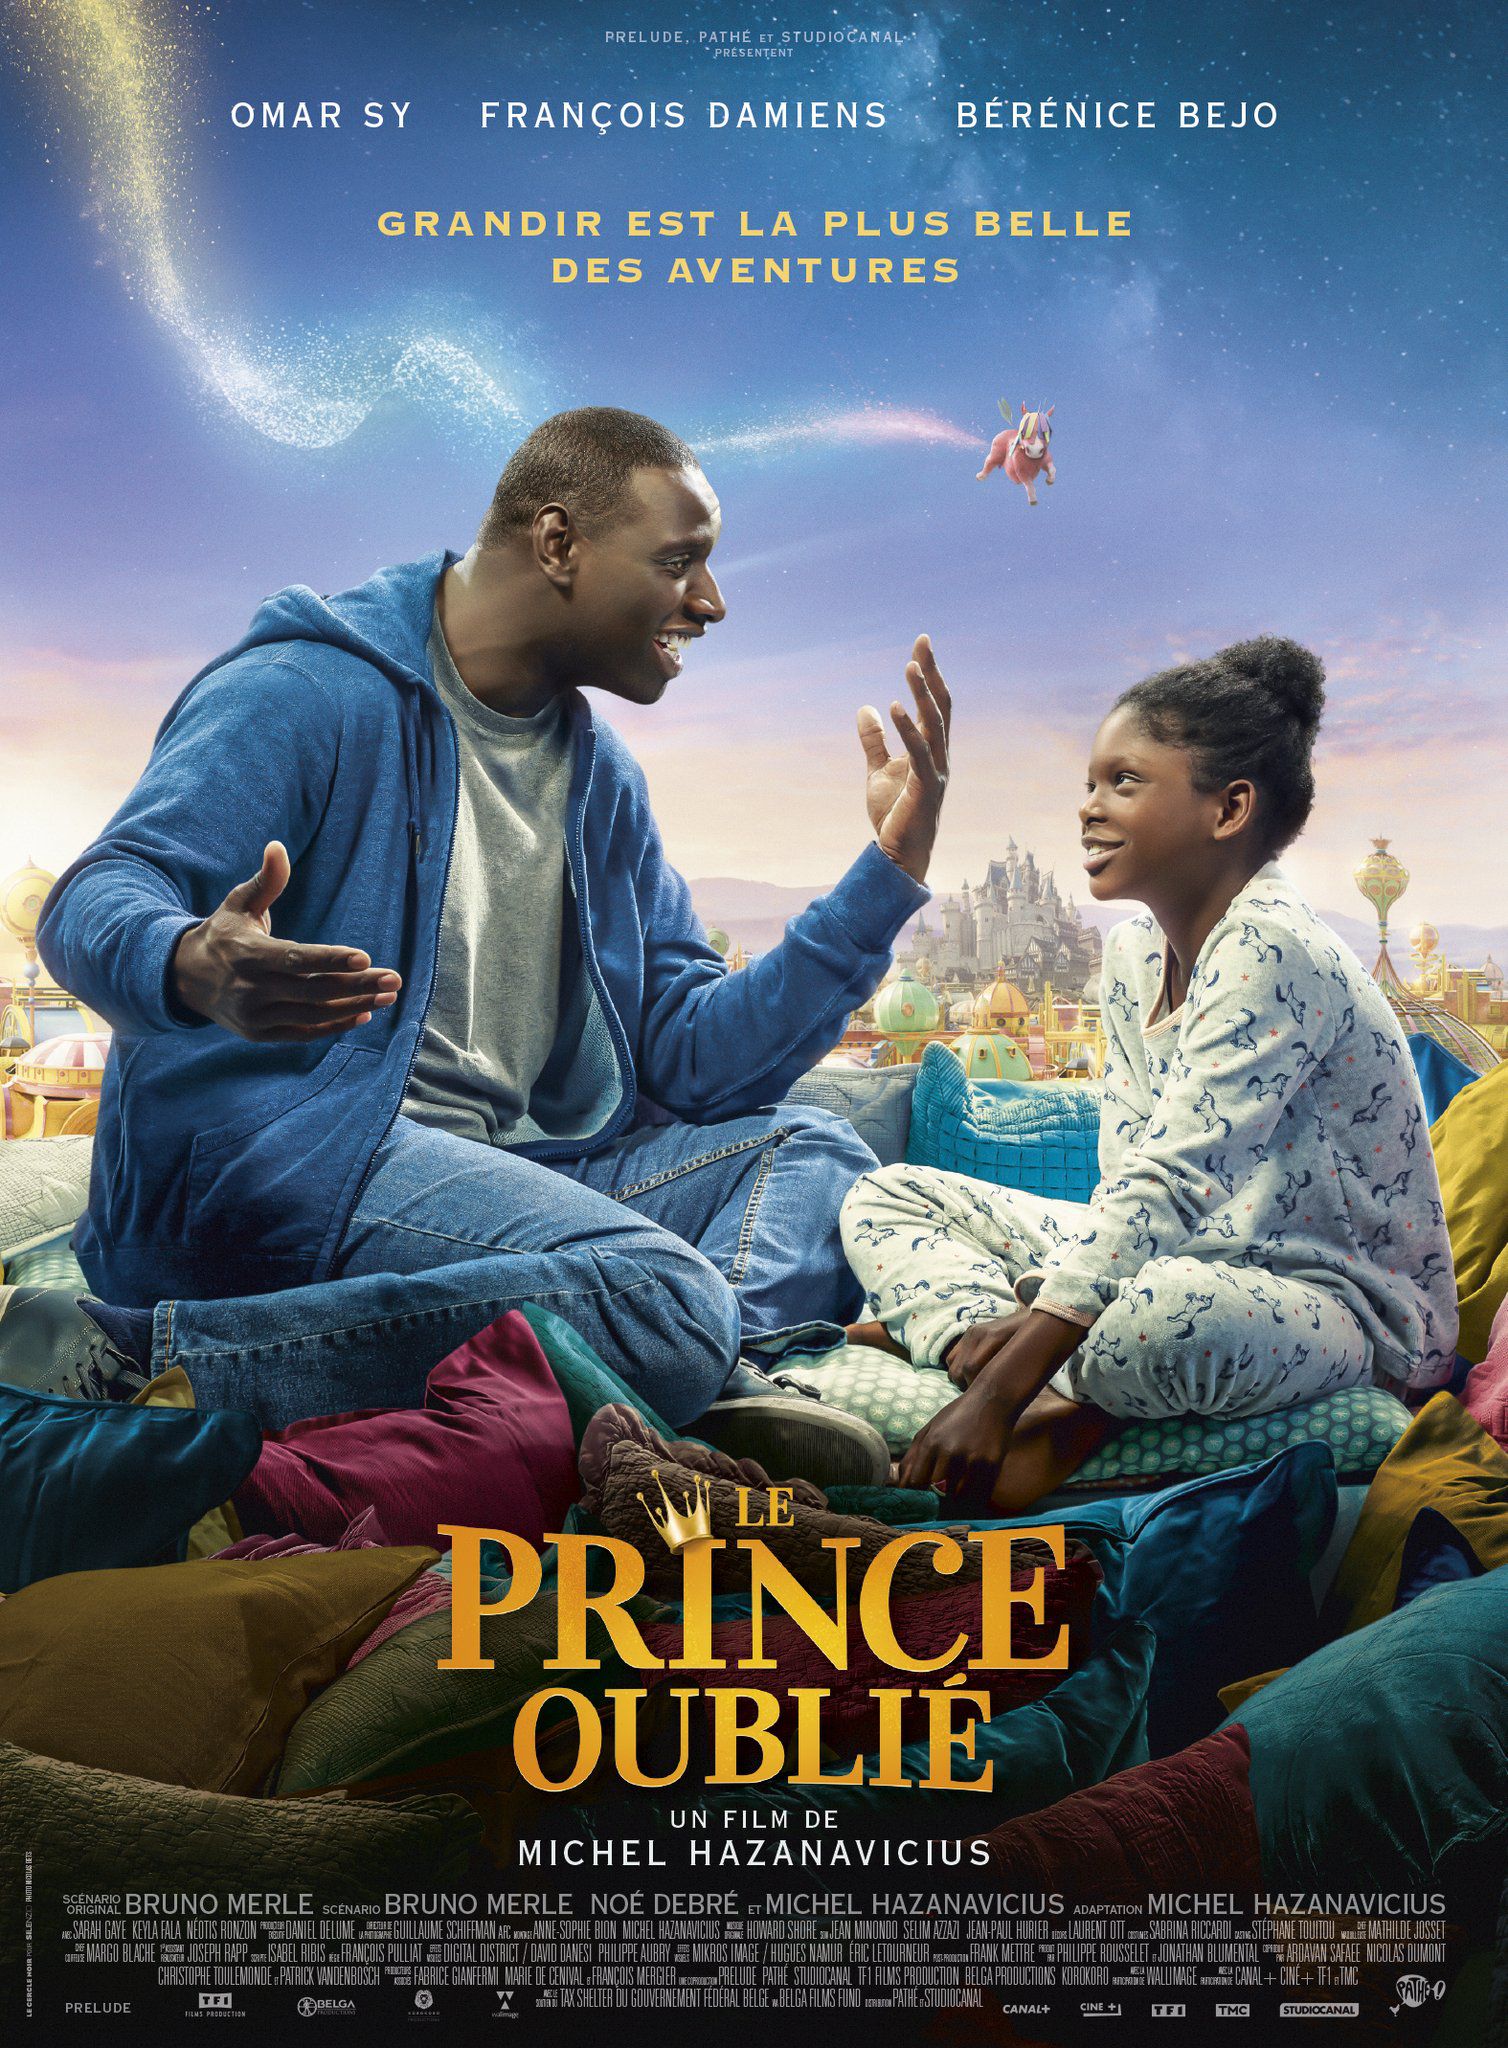 Le Prince oublié - Film (2020)